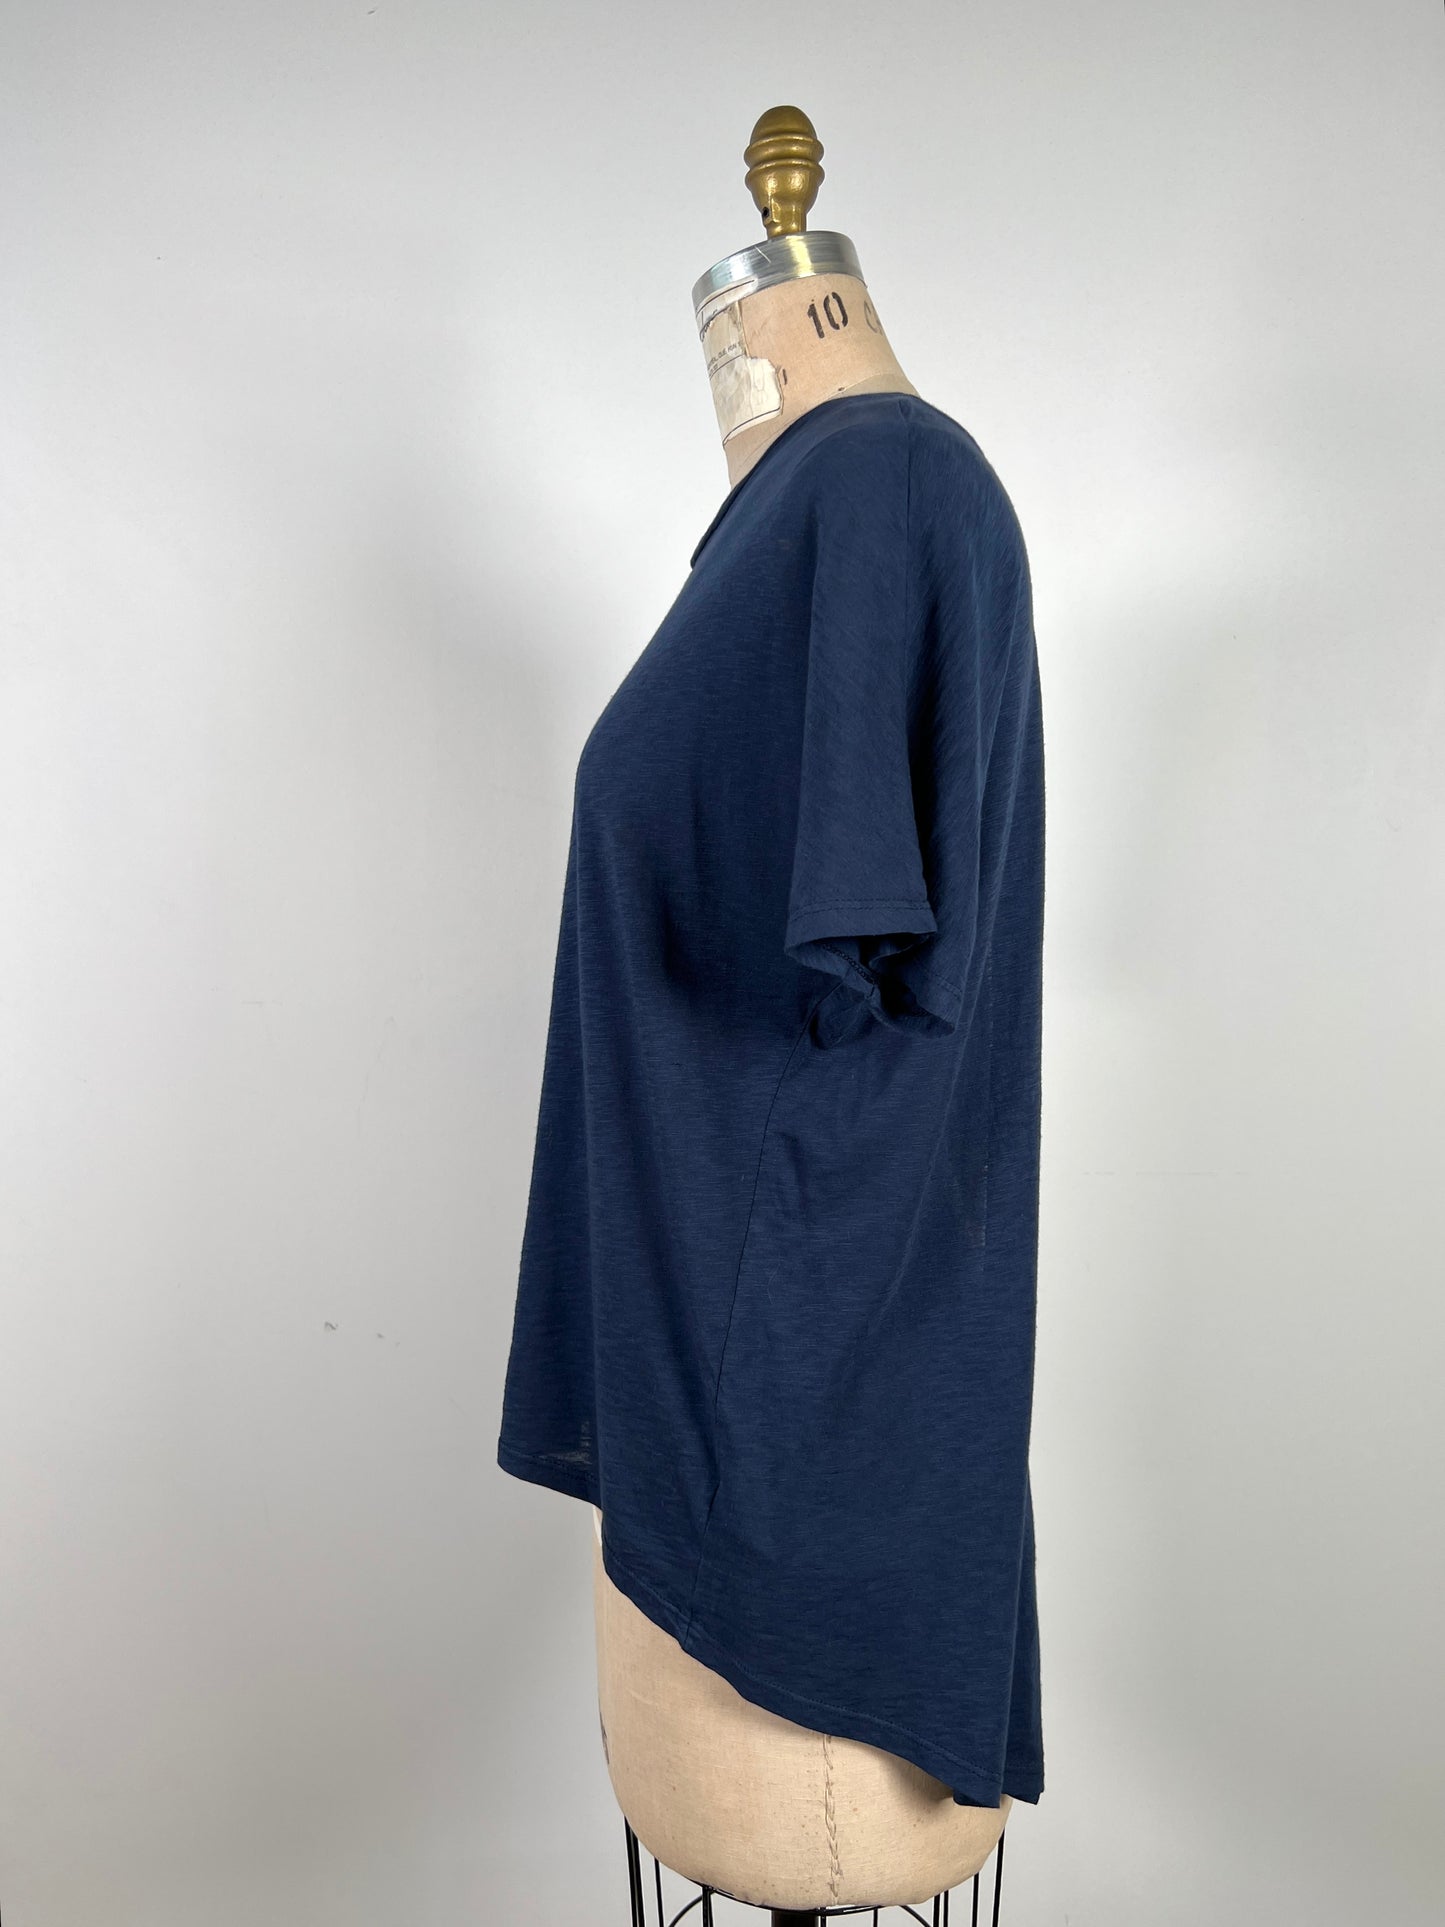 T-shirt bleu canard à dos ouvert (XS)